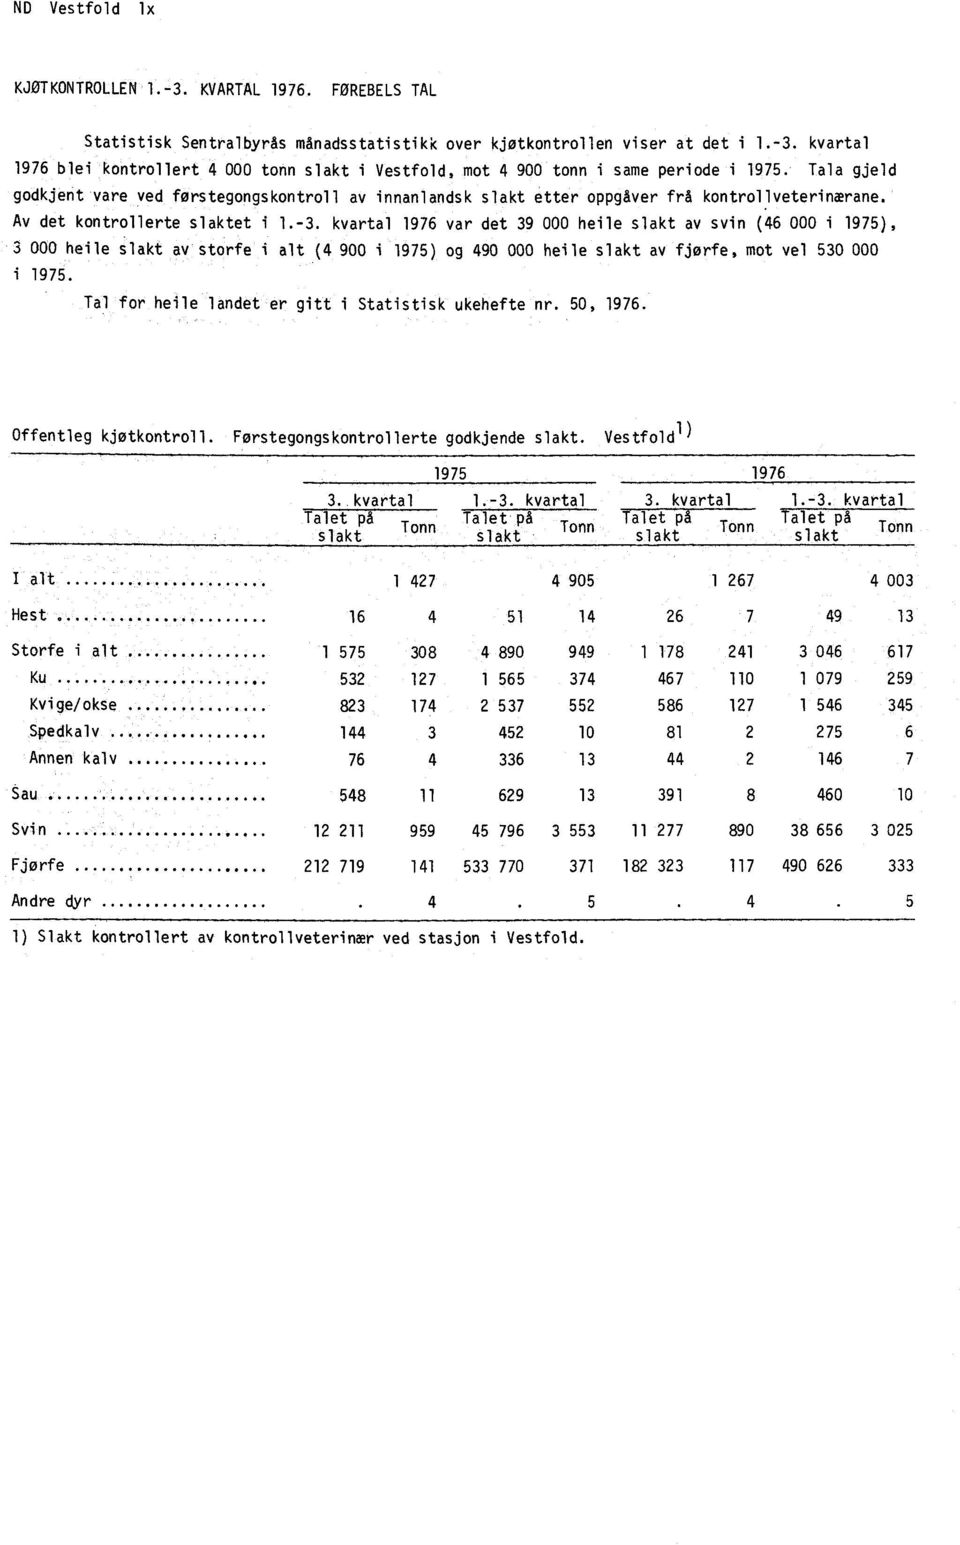 kvartal 1976 var det 39 000 heile slakt av svin (46 000 i 1975), 3 000 heile slakt av storfe i alt (4 900 i 1975) og 490 000 heile slakt av fjørfe, mot vel 530 000 i 1975.